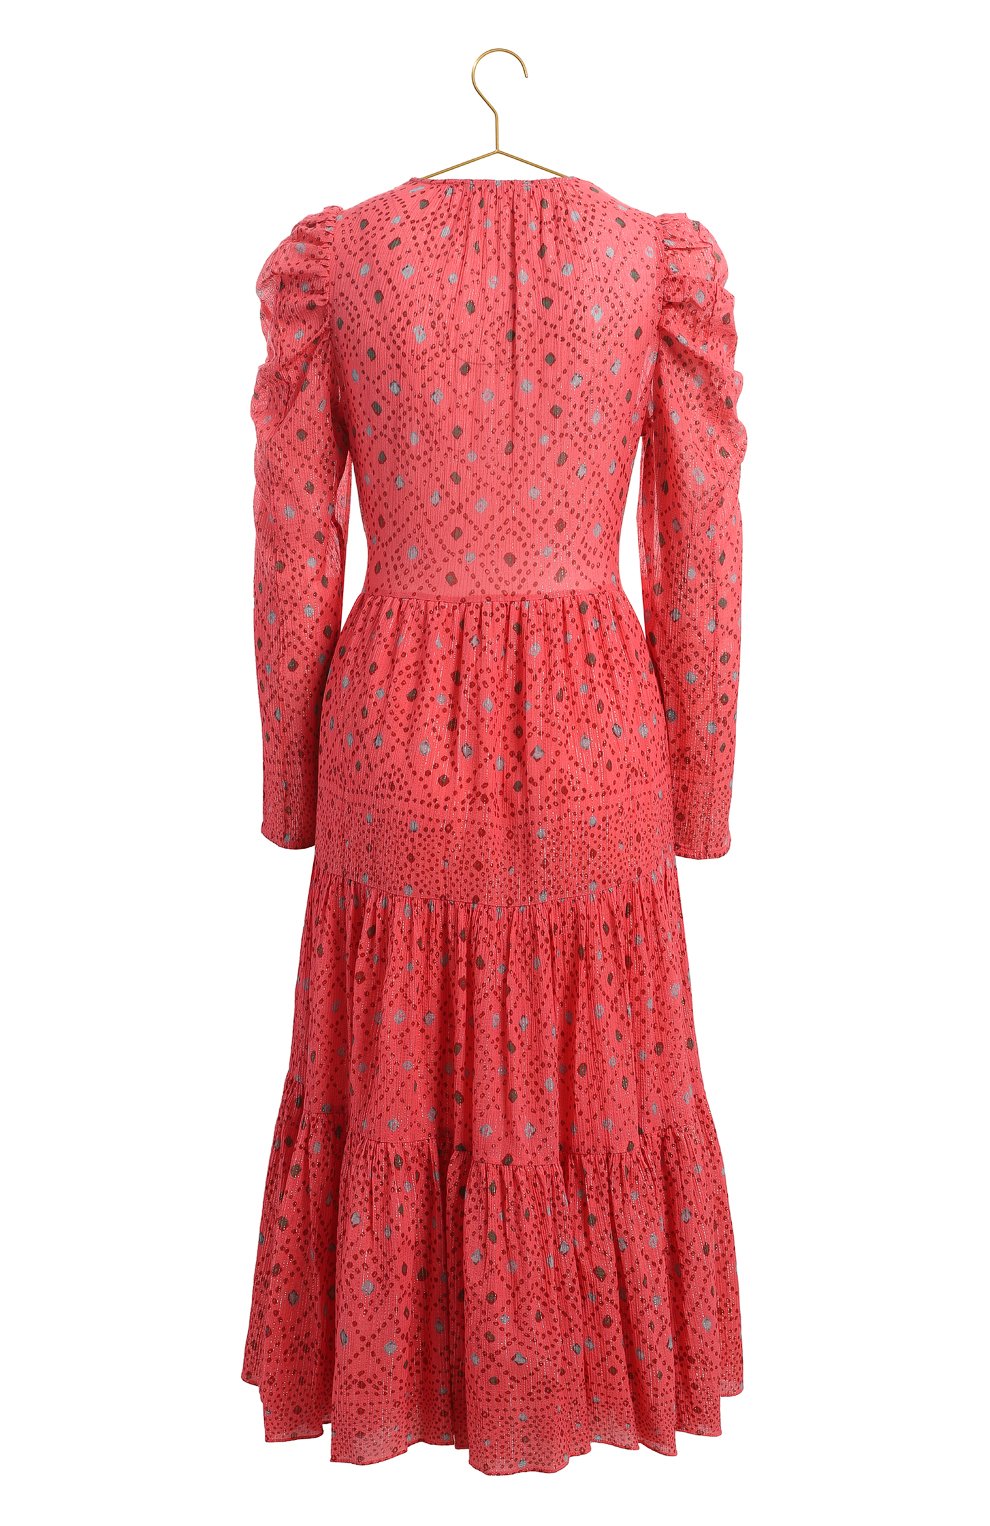 Платье из хлопка и вискозы | Ulla Johnson | Красный - 2